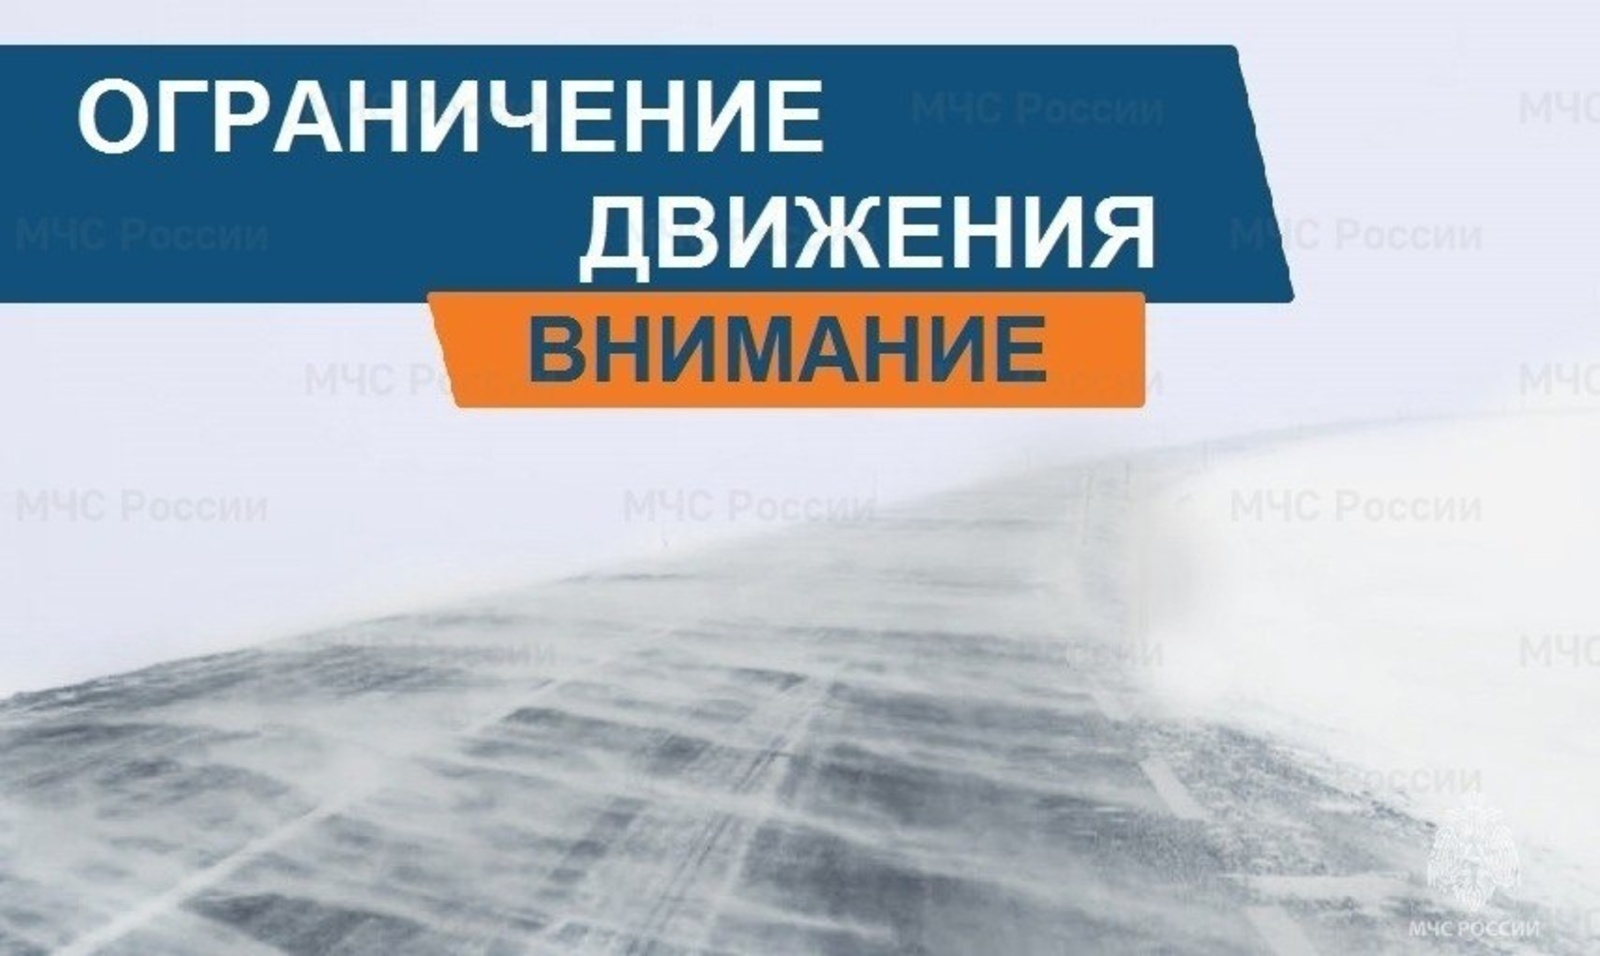 В Башкирии введены ограничения для транспорта